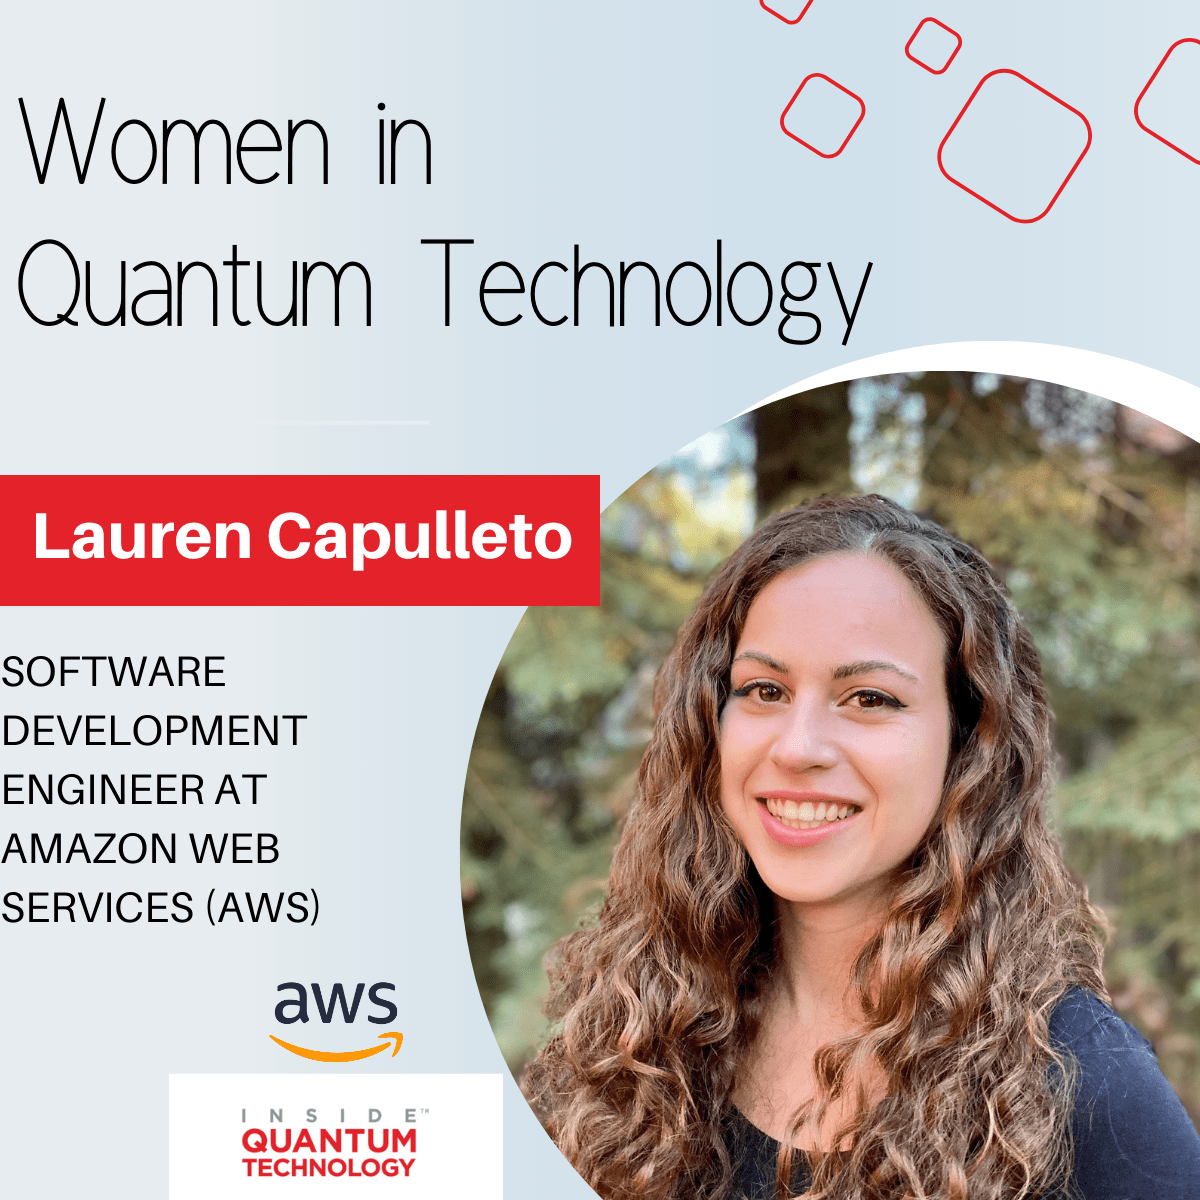 Lauren Capulleto, Kỹ sư phát triển phần mềm tại Amazon Web Services (AWS) kể câu chuyện của mình về việc gia nhập ngành công nghiệp lượng tử.